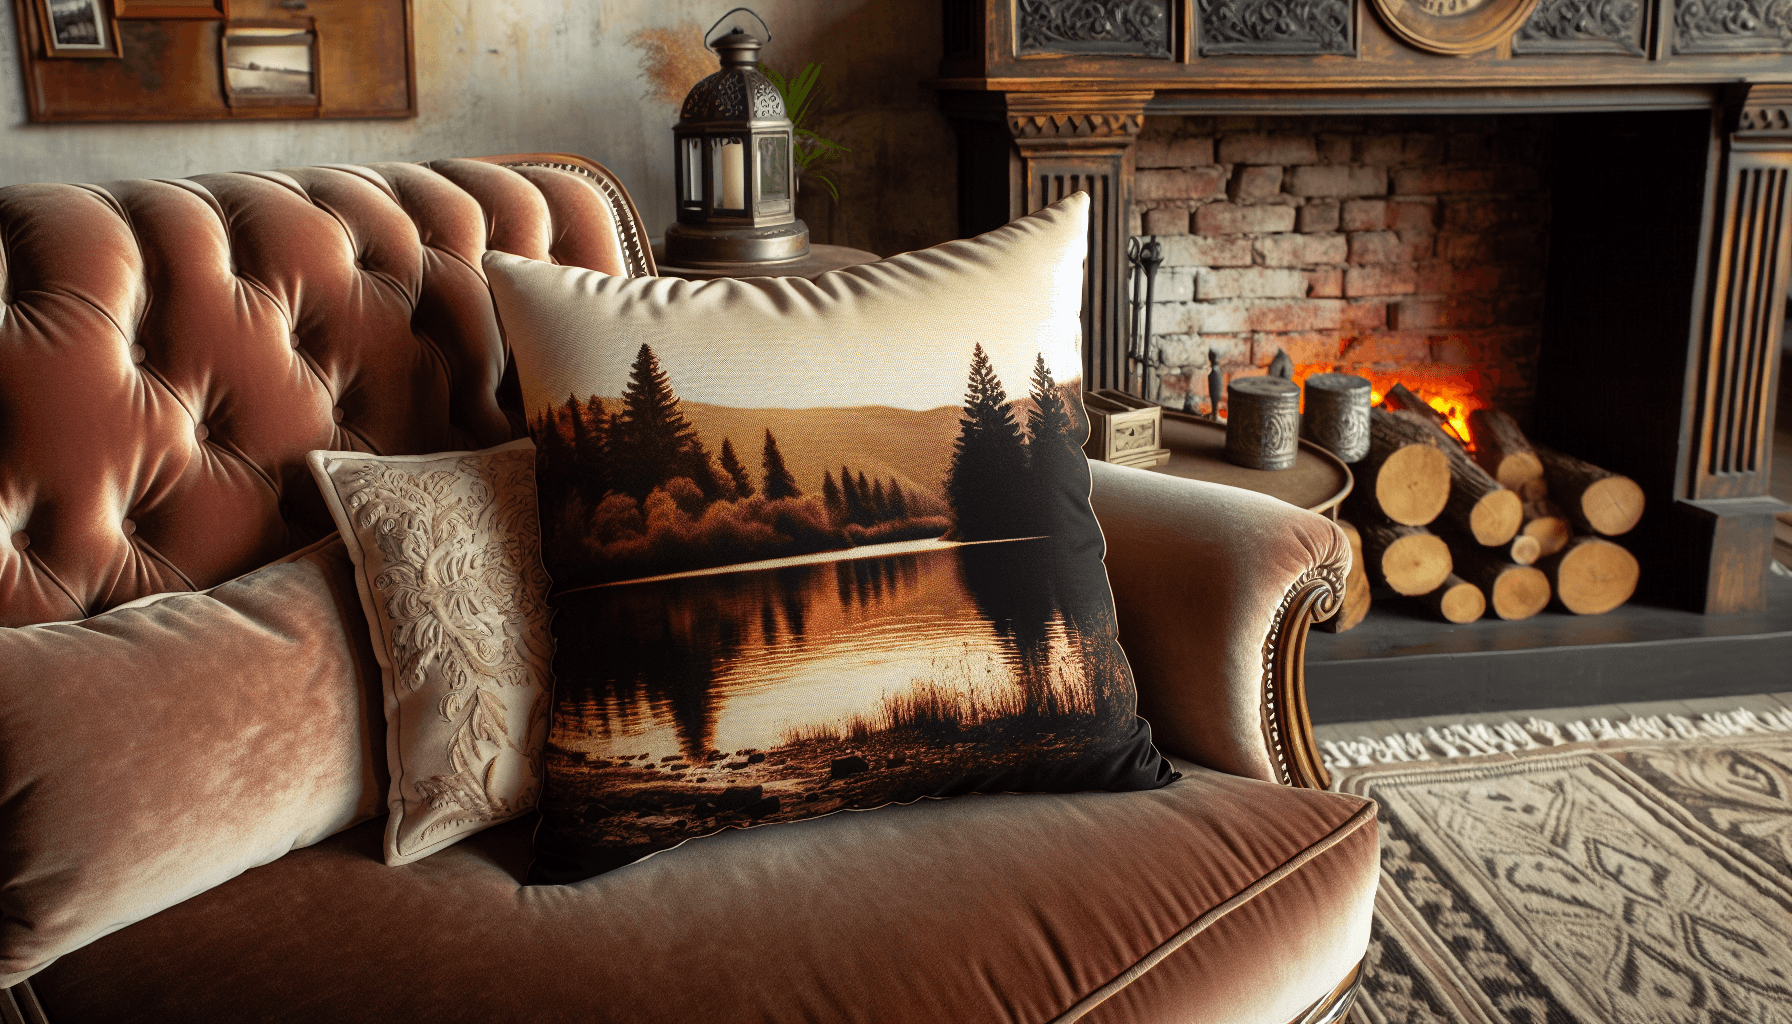 A cozy custom photo pillow on a sofa